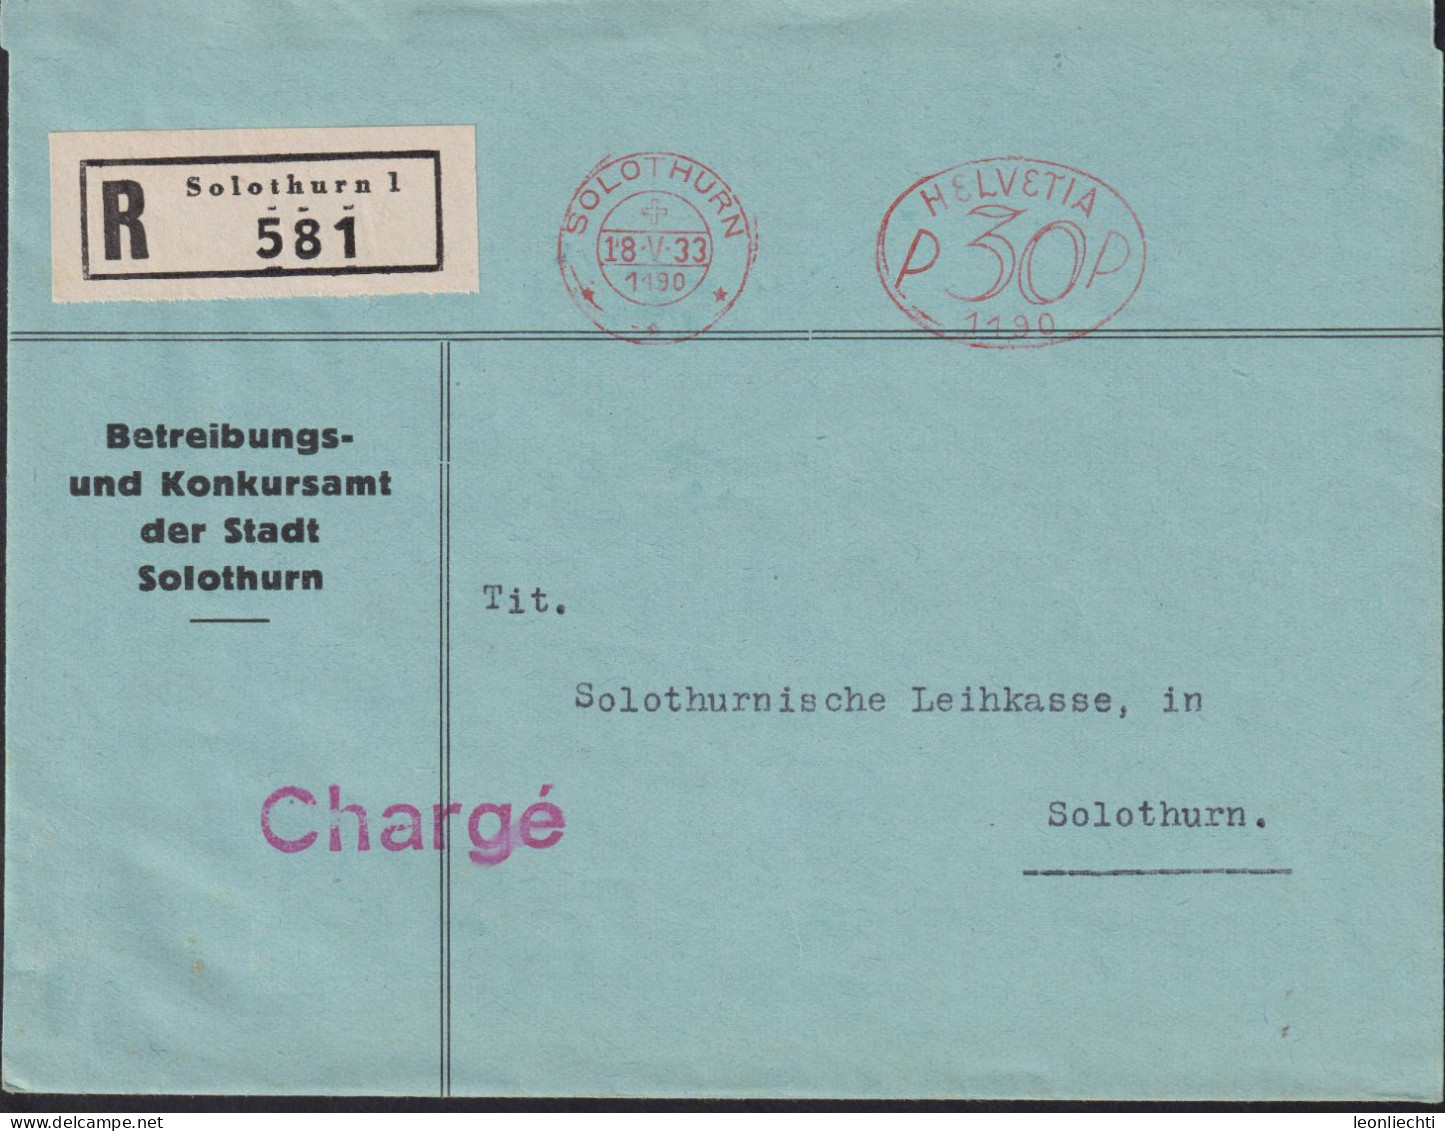 1933 Schweiz, R-Brief (FraMA)  Solothurn + HELVETIA P 30 1190, Betreibungs U. Konkursamt Der Stadt Solothurn - Frankiermaschinen (FraMA)